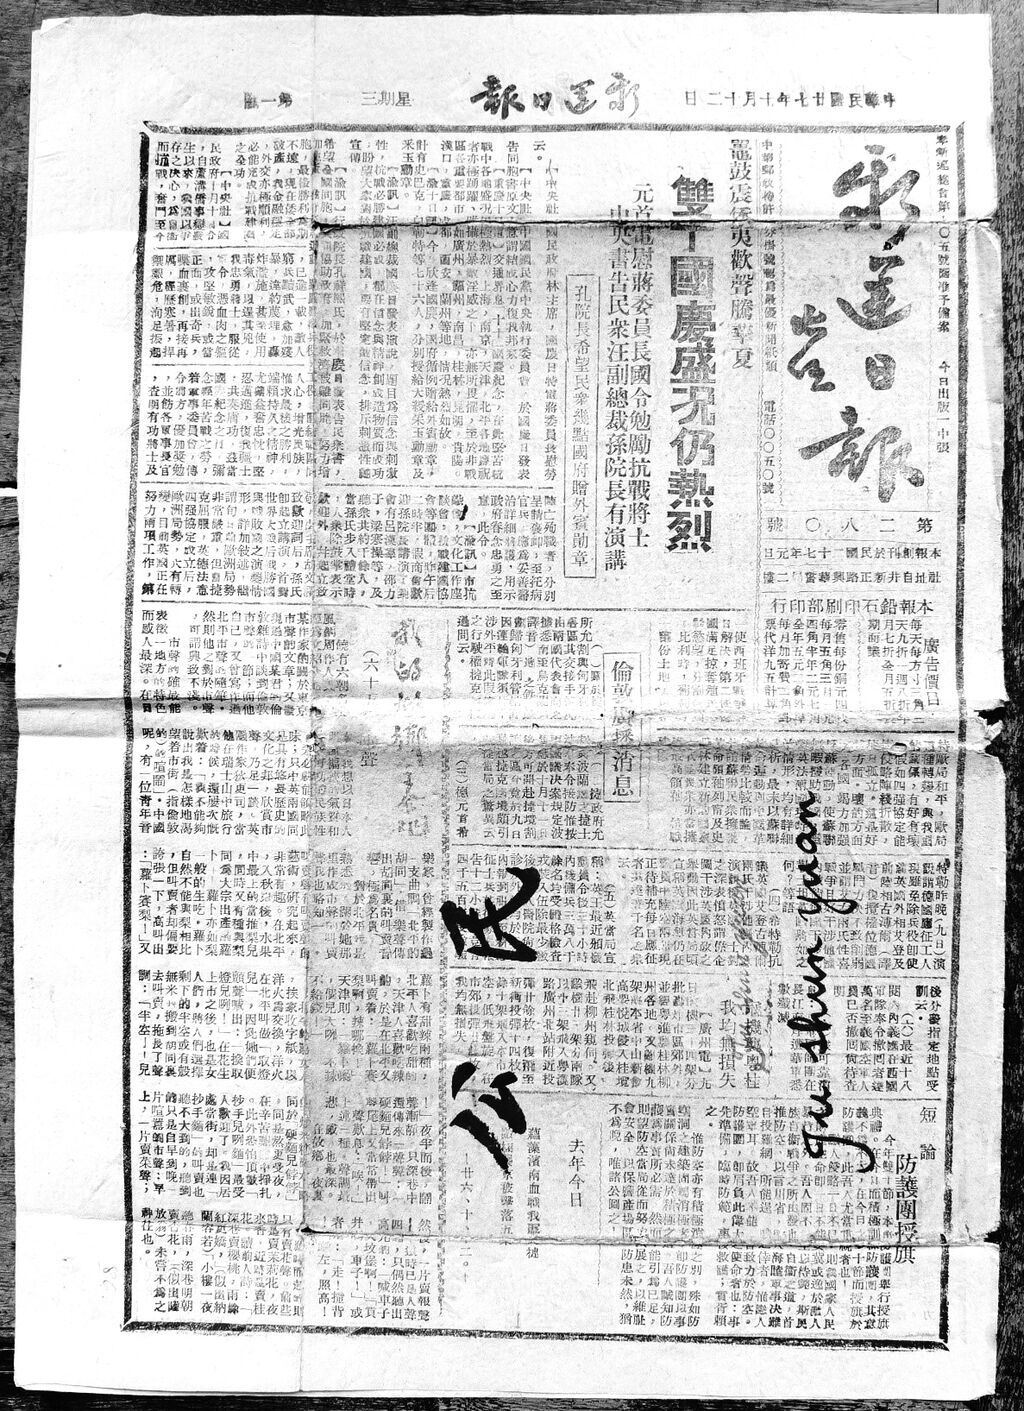 1938年10月12日出版的《新运日报》